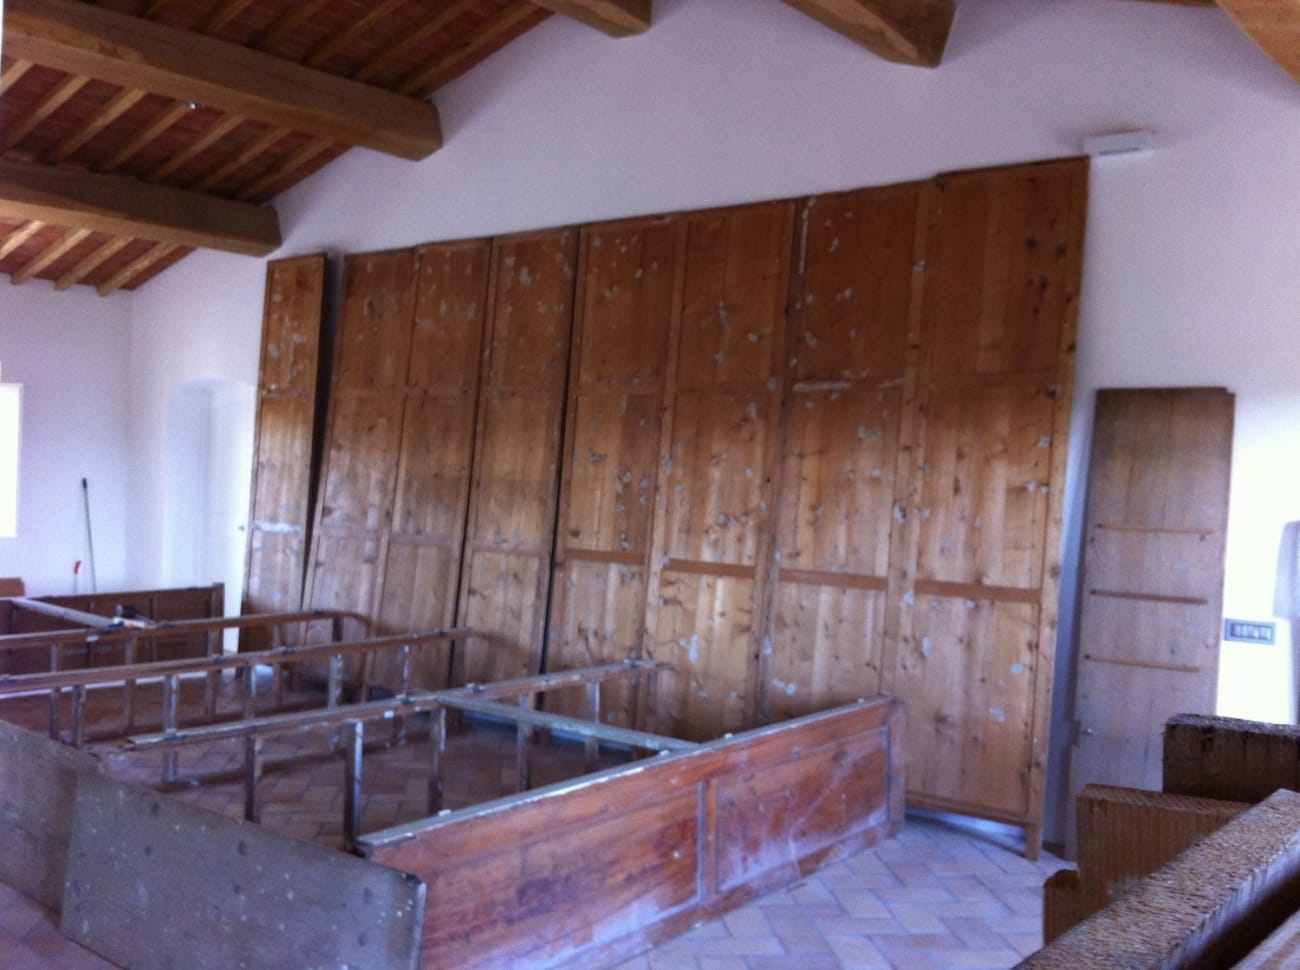 Armadio Jane Harman conservazione e restauro mobili a Firenze